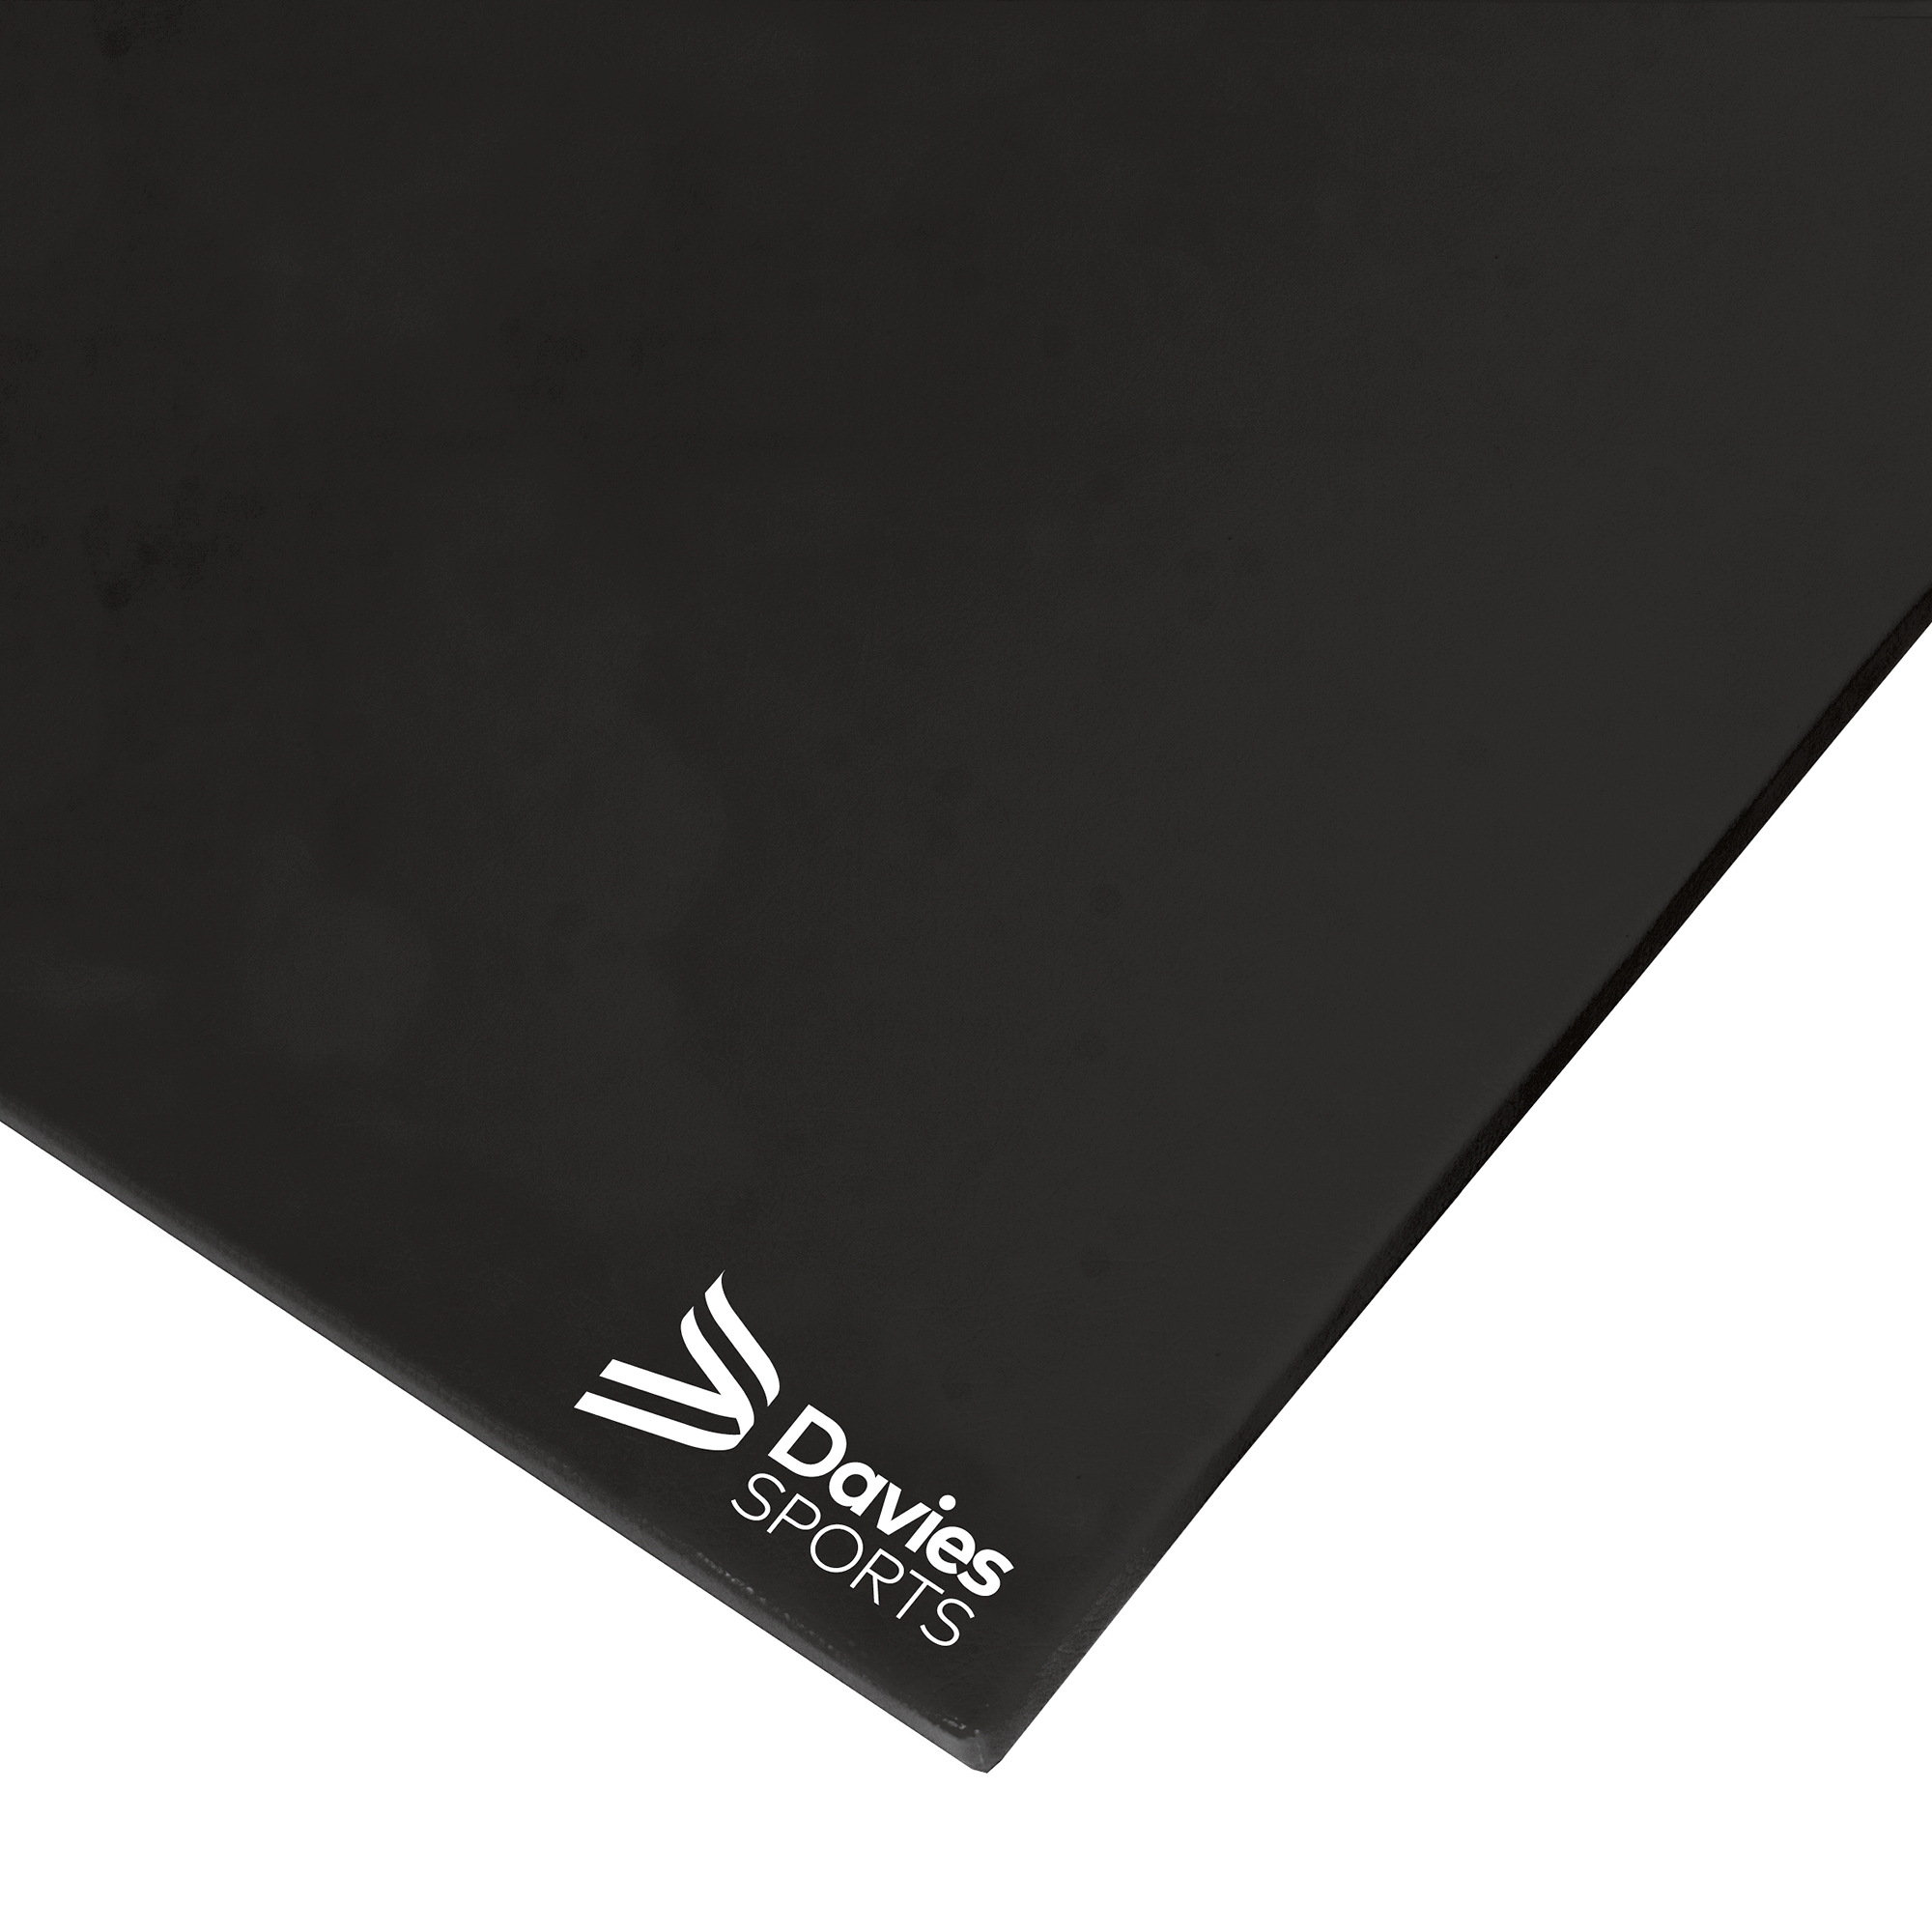 Davies Sports Agility Mat Standard Black - 3.05m x 1.22m x 50mm